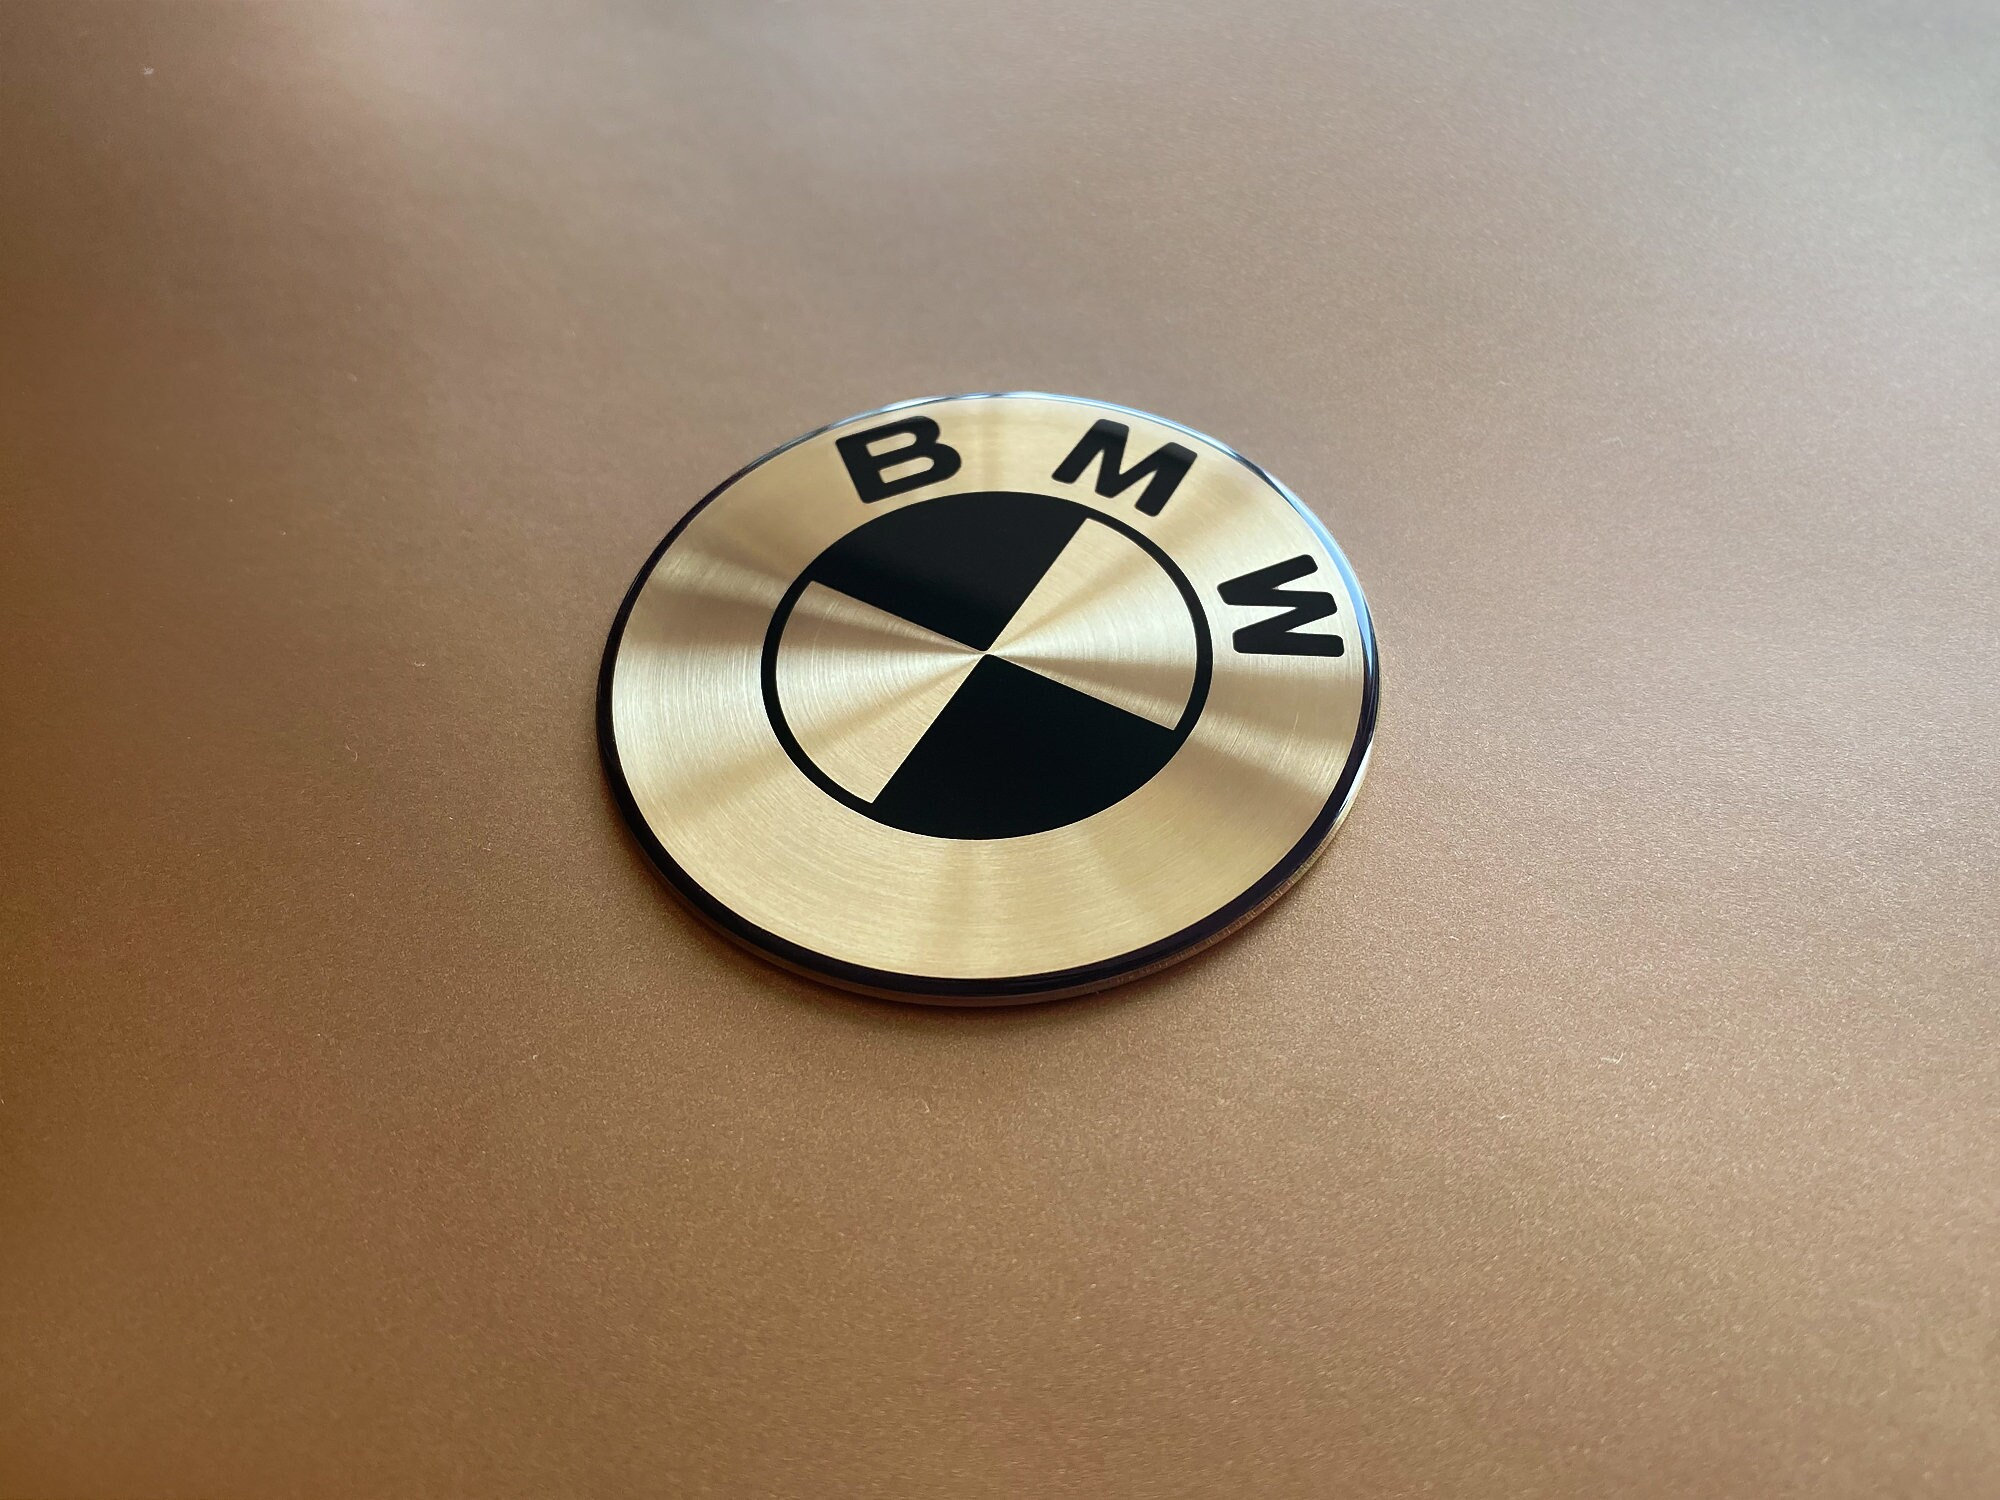 X6 Silber Schwarz Abs Auto Auto Emblem Hintere Plakette Aufkleber Zubehör  für BMW X 6 Buchstaben Kofferraum Emblem Heck Plakette Aufkleber